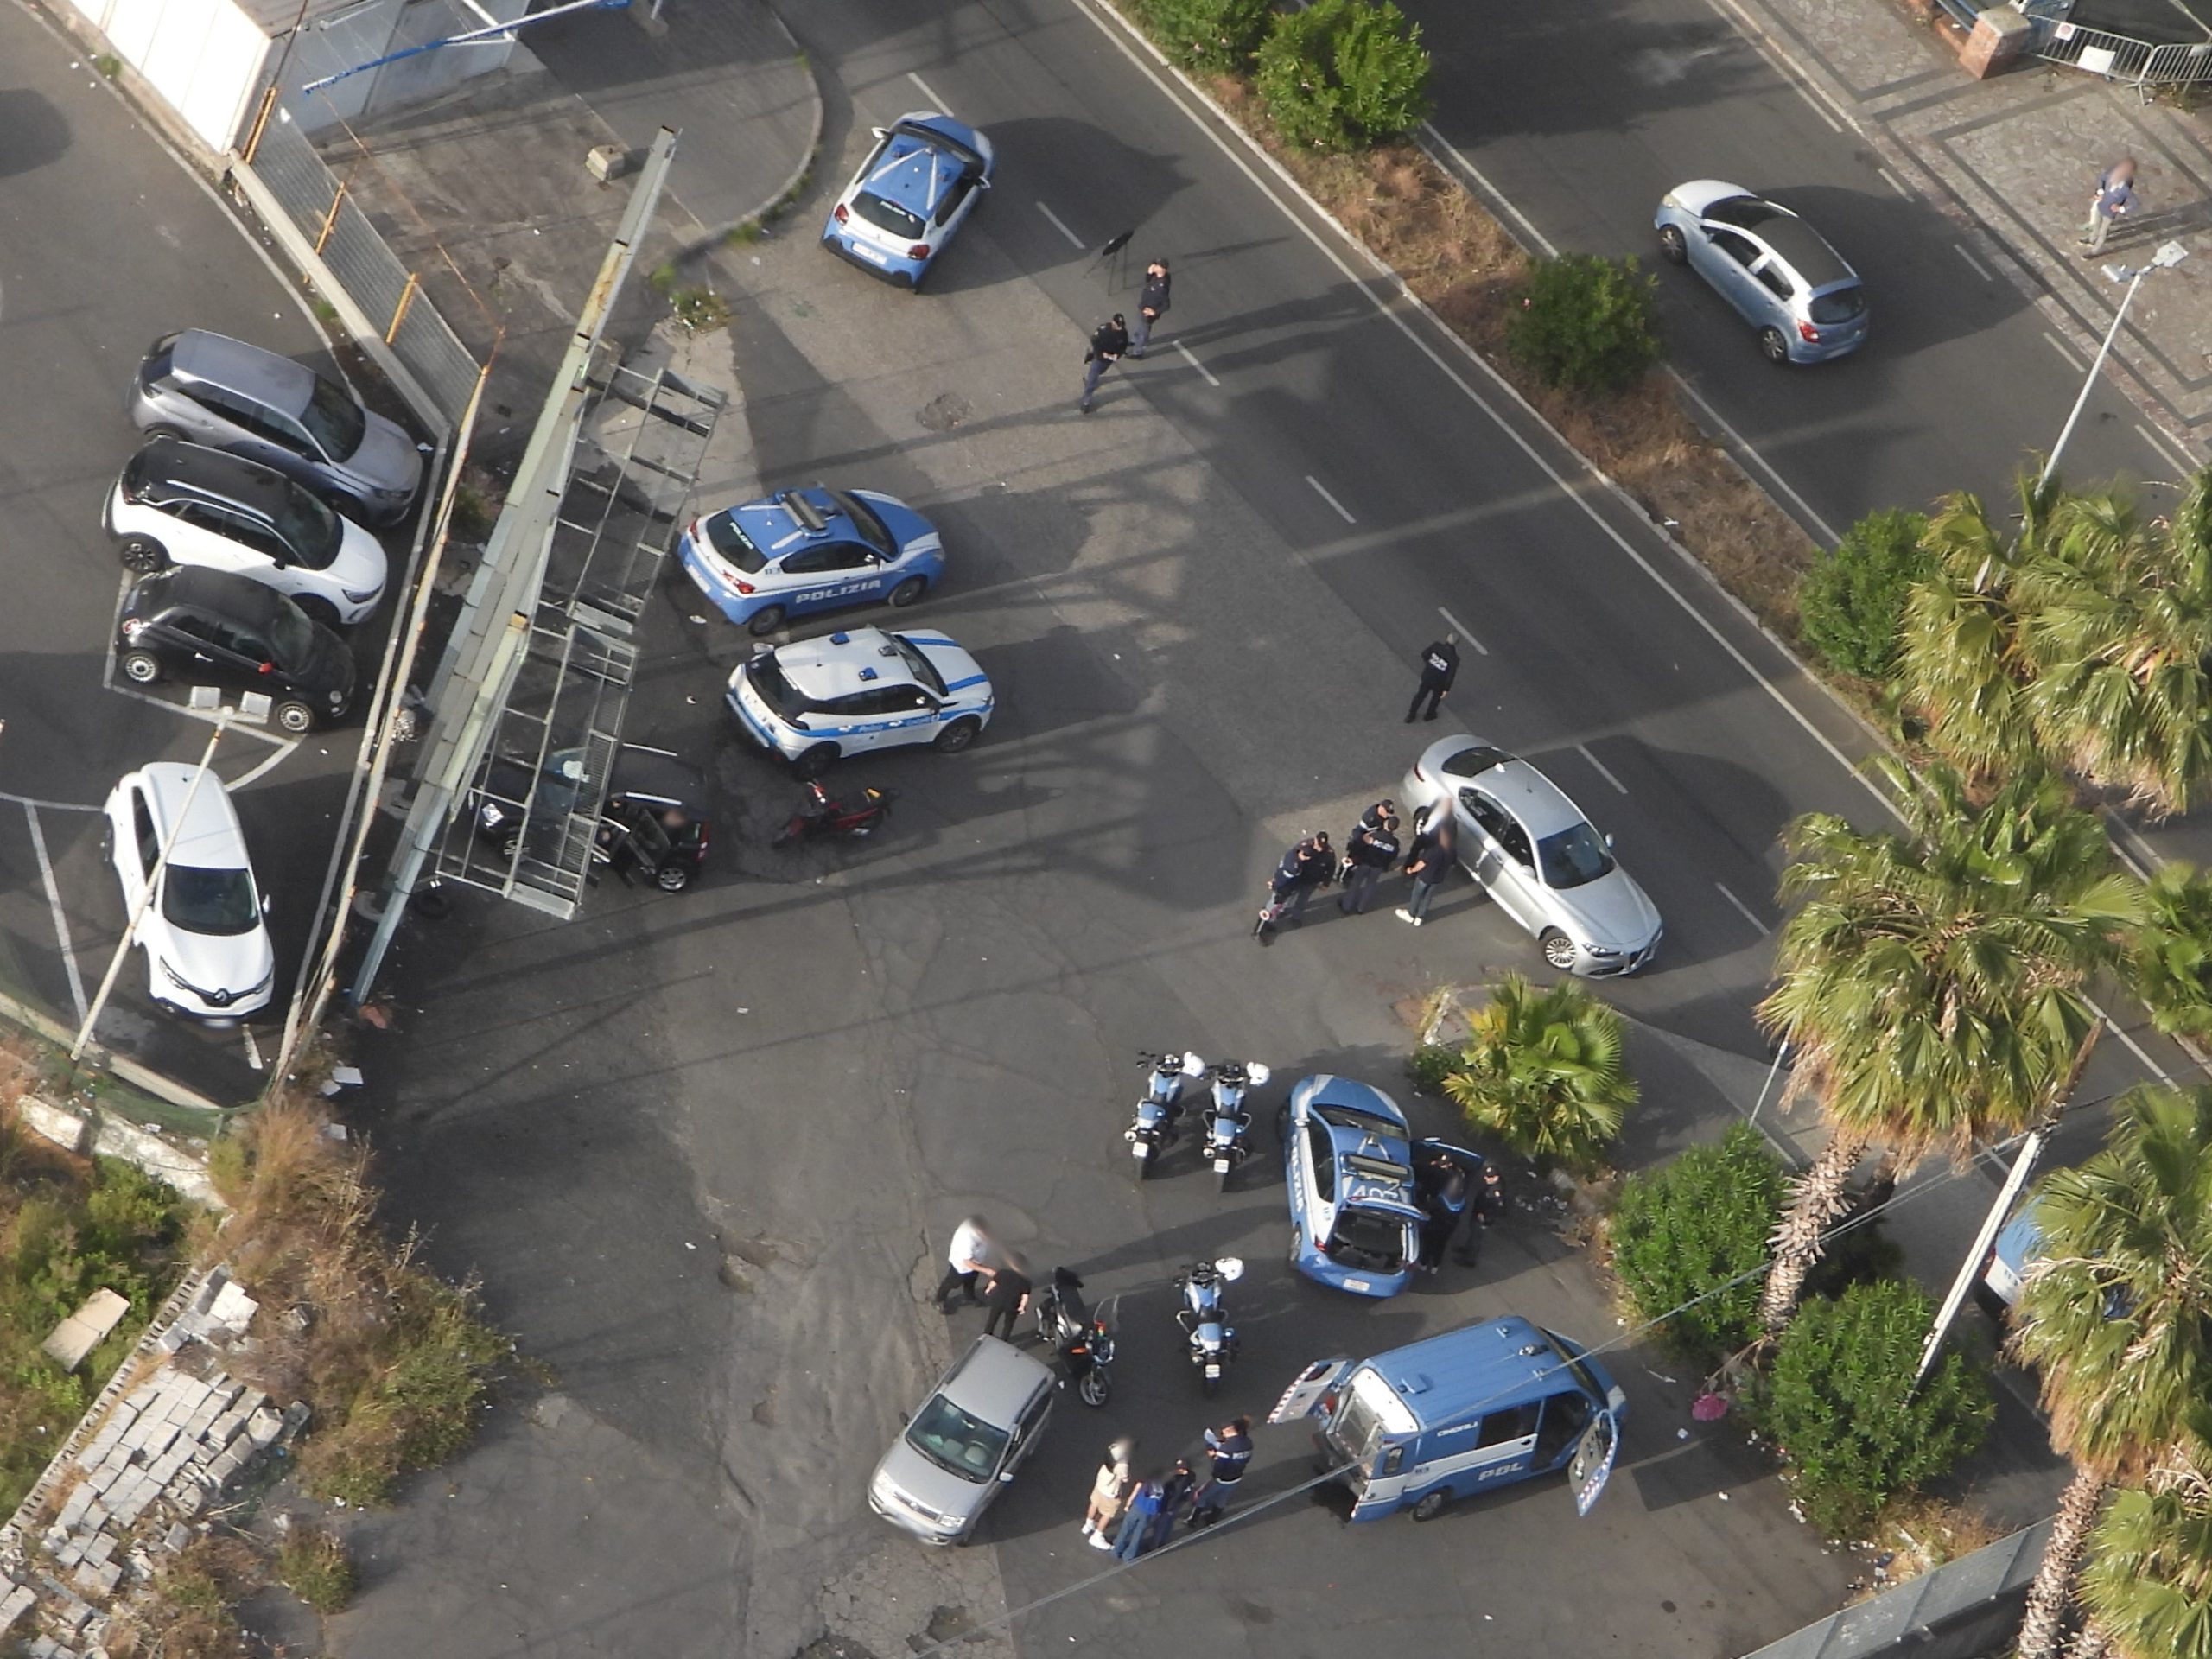 Succede a Catania e provincia: cinque arresti, diverse denunce e oltre 40 provvedimenti